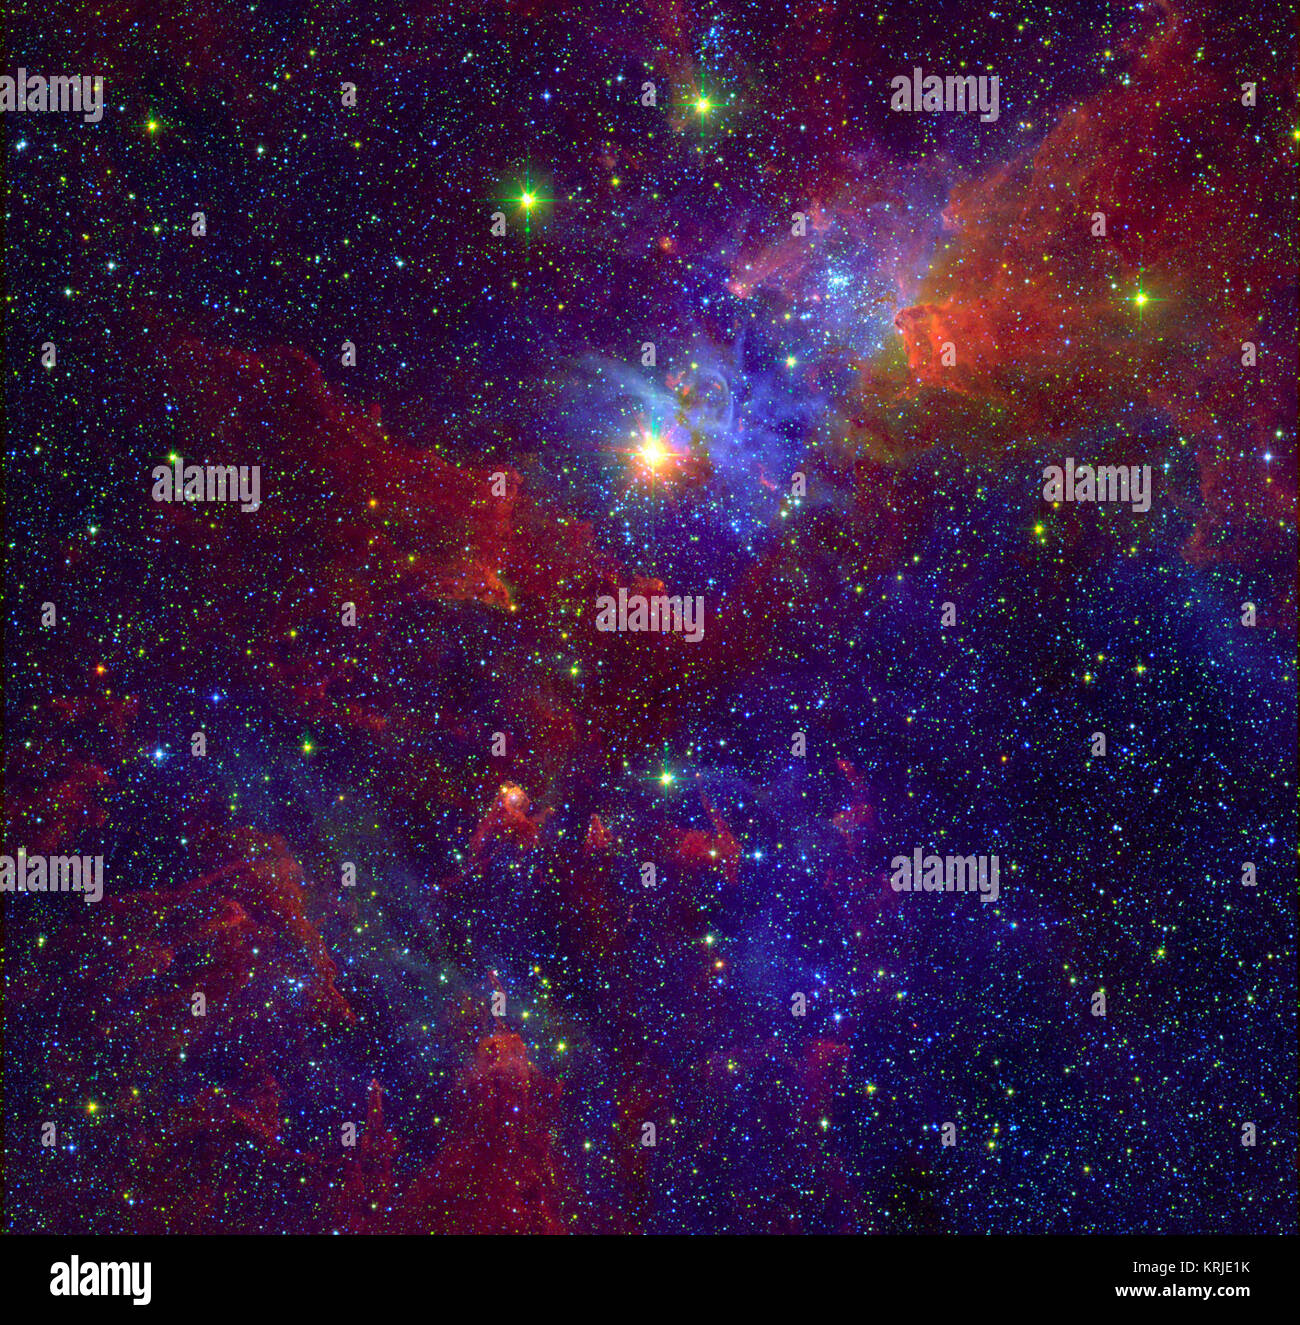 Eta Carinae è uno dei più grandi e brillanti stelle nella Via Lattea. Rispetto al nostro Sole, è circa 100 volte più massiccia e un milione di volte più luminose. Questo celebre hypergiant variabile star (centro superiore) è circondato da Carina Nebula. In questa immagine composita spanning del visibile e dell'infrarosso parti dello spettro, aree che appaiono blu non sono oscurati da polvere, mentre le aree che appaiono in rosso sono nascoste dietro le nuvole scure di polvere in luce visibile. Uno studio la combinazione di raggi X e osservazioni a infrarossi ha rivelato una nuova popolazione di stelle massicce in agguato nelle regioni della nebulosa tha Foto Stock